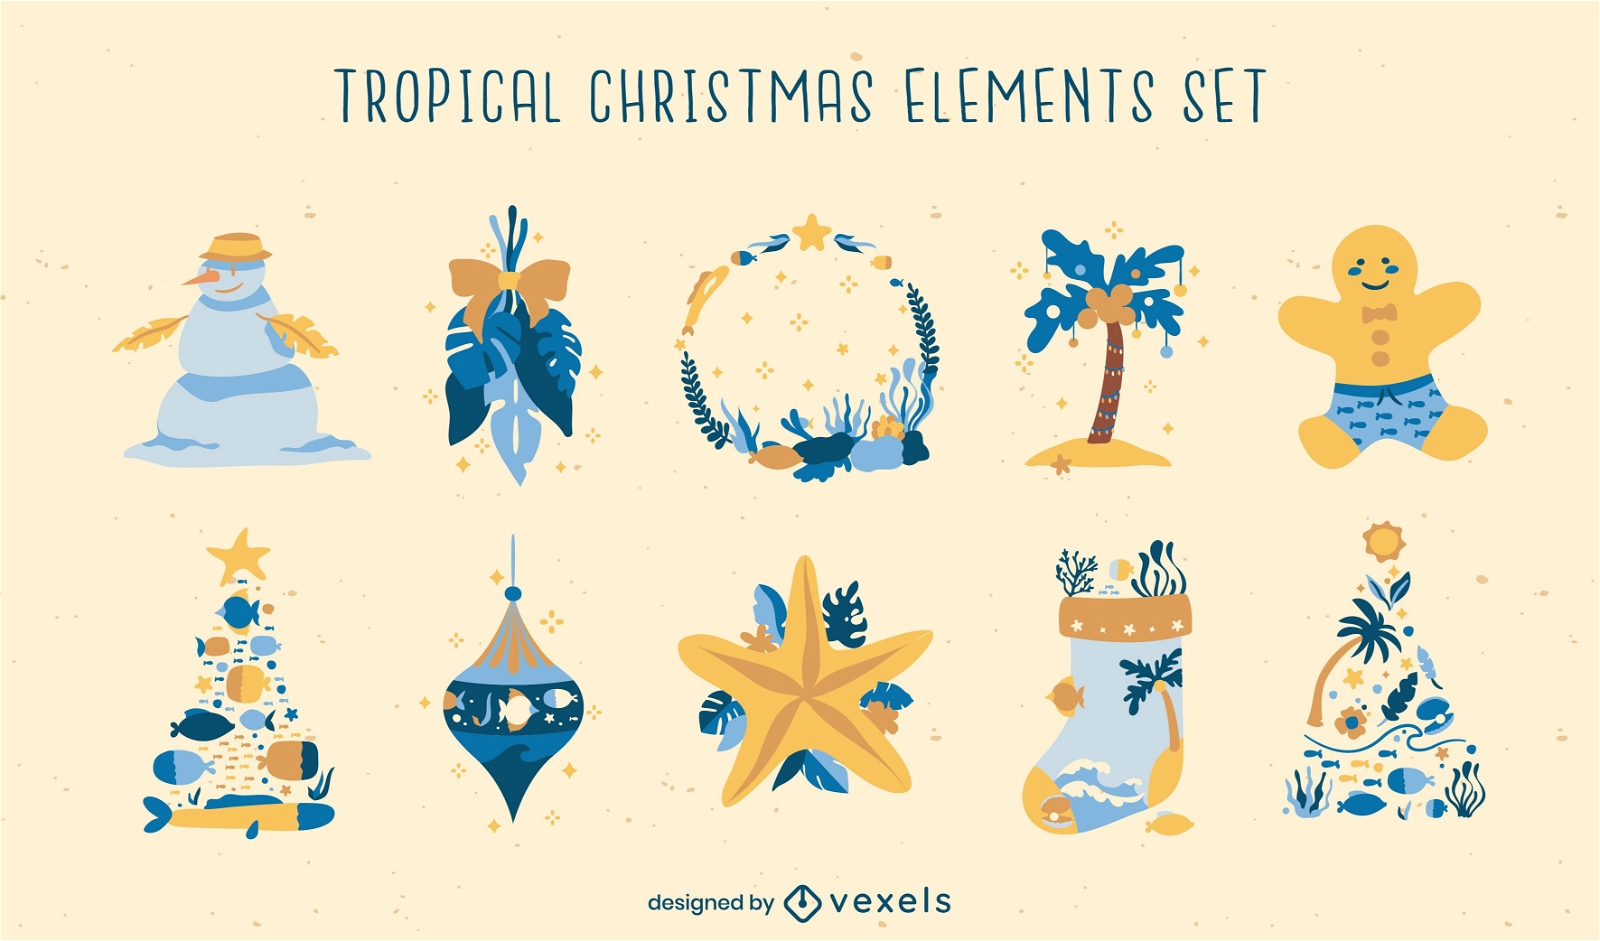 Conjunto de elementos tropicales de temporada navide?a